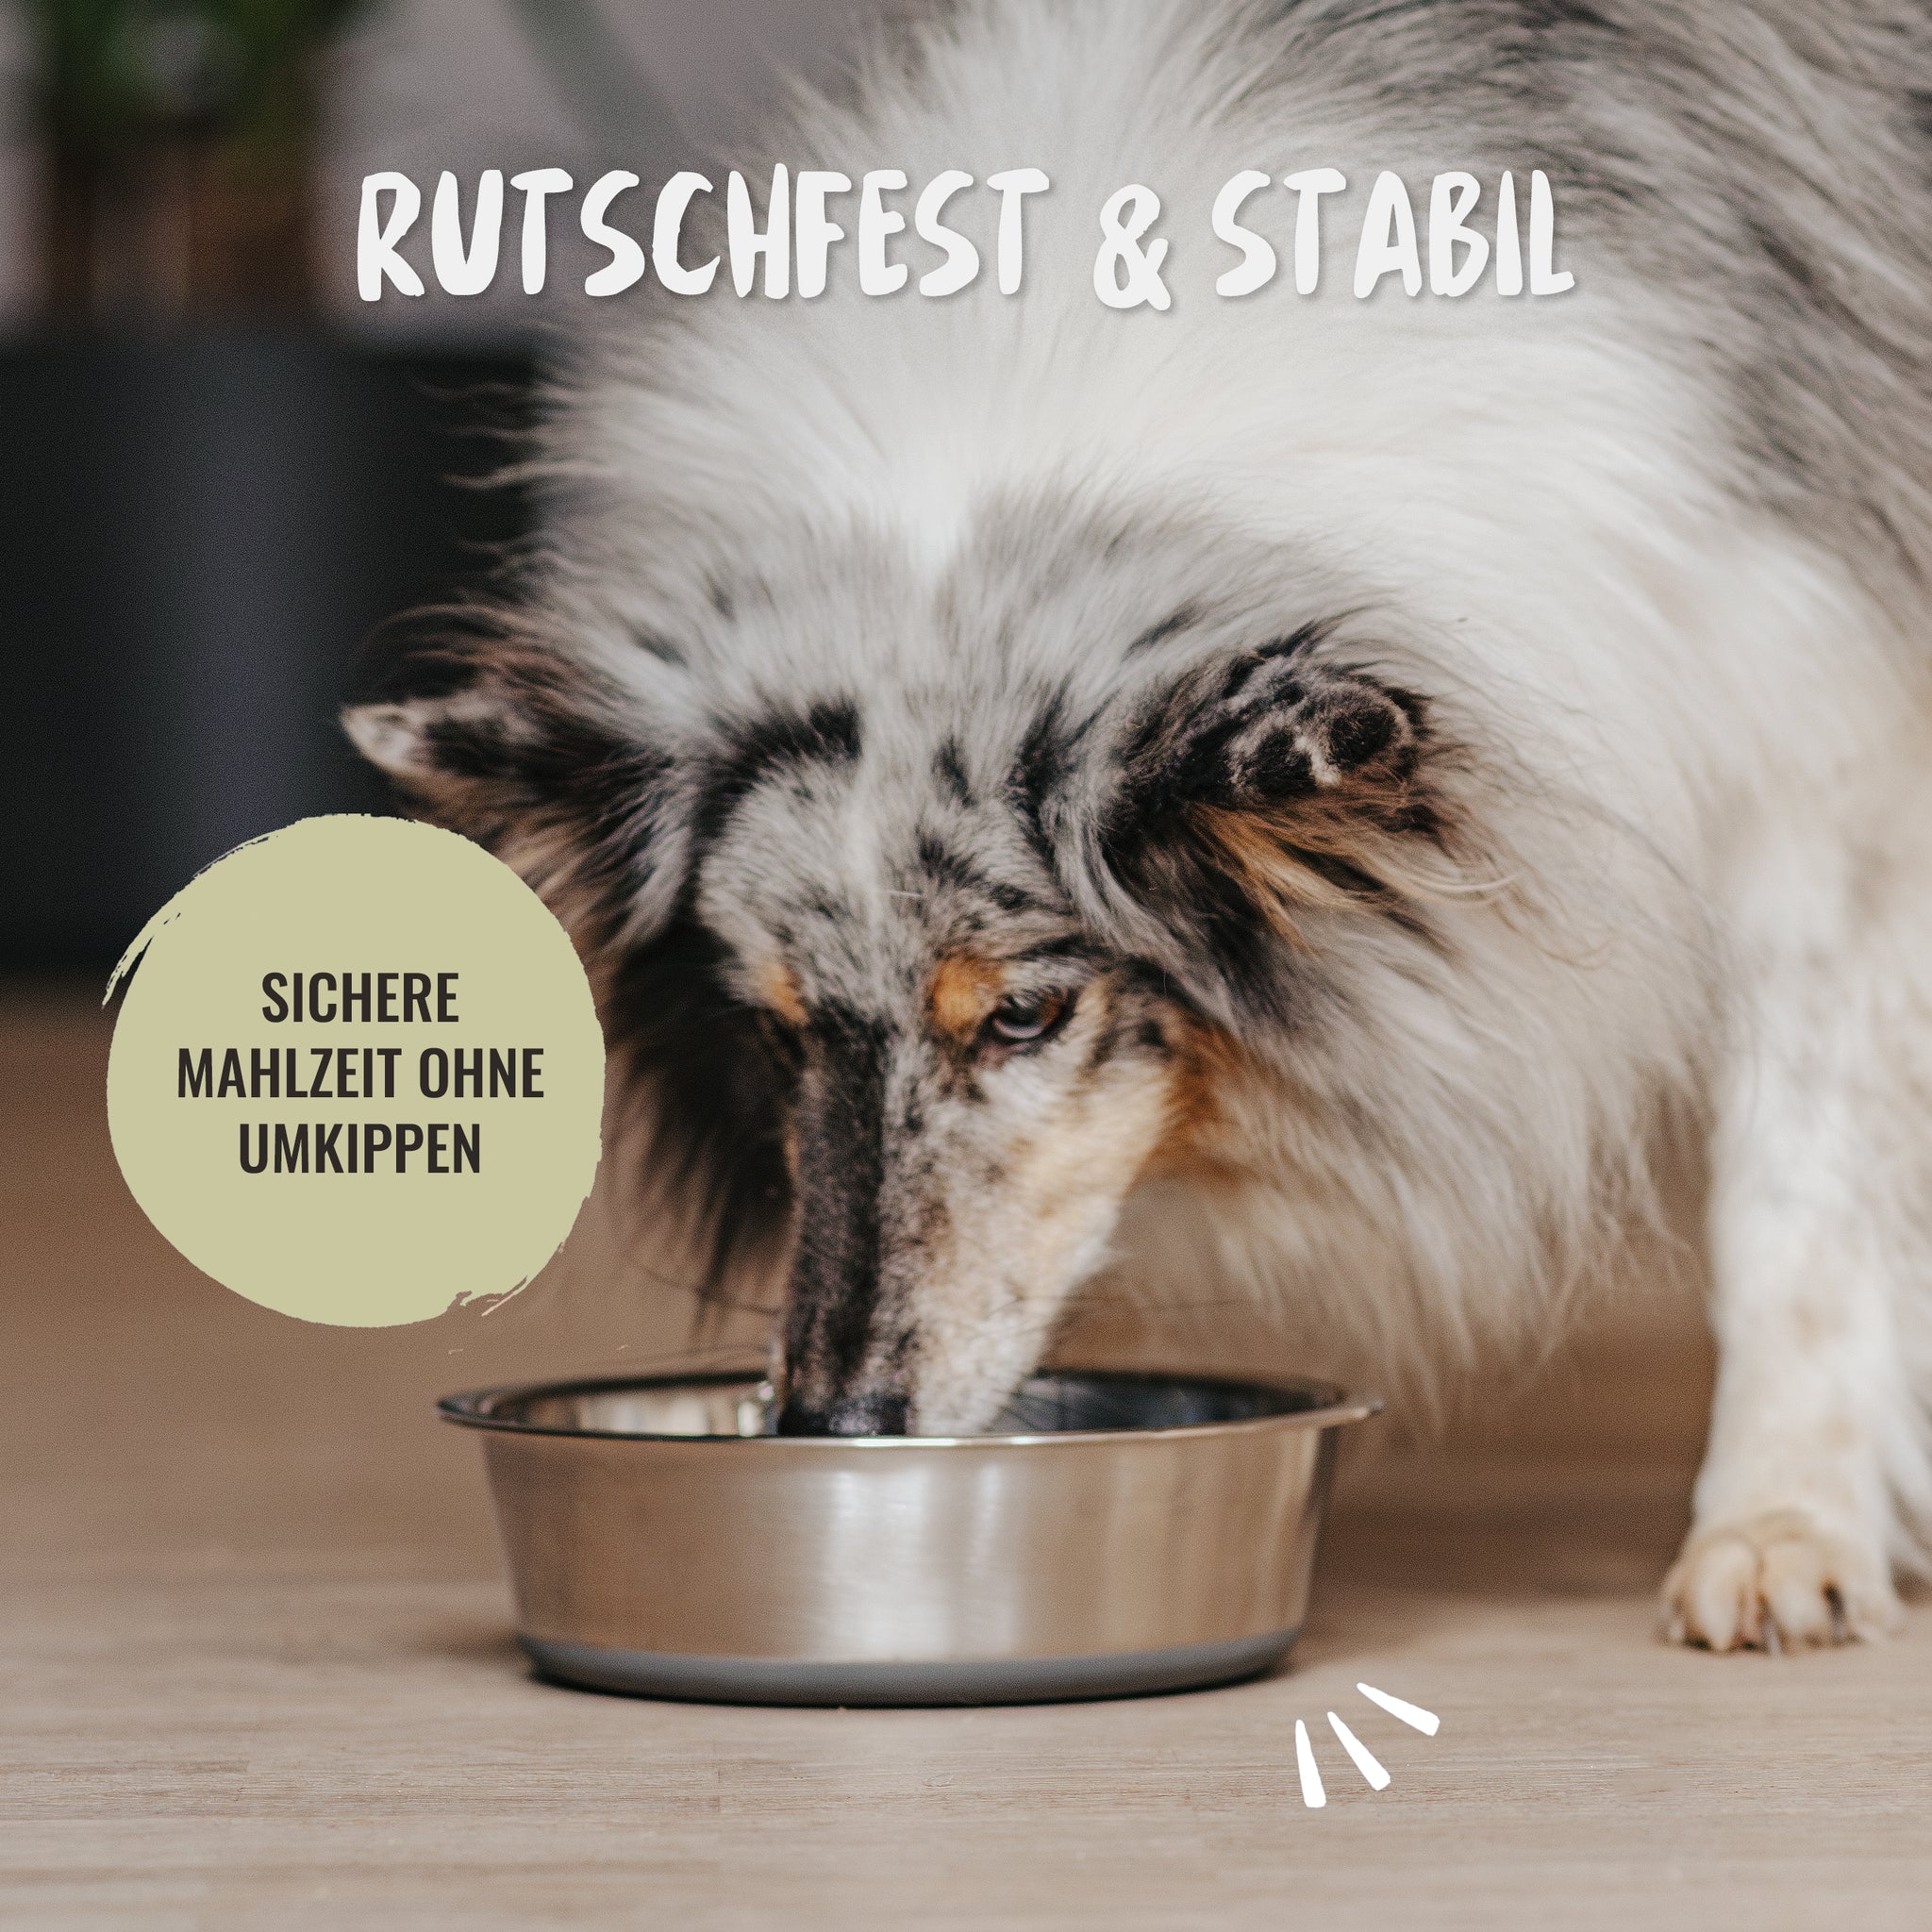 Der rutschfeste Edelstahl Futternapf für Hundefutter oder Katzenfutter garantiert eine sichere stabile Mahlzeit